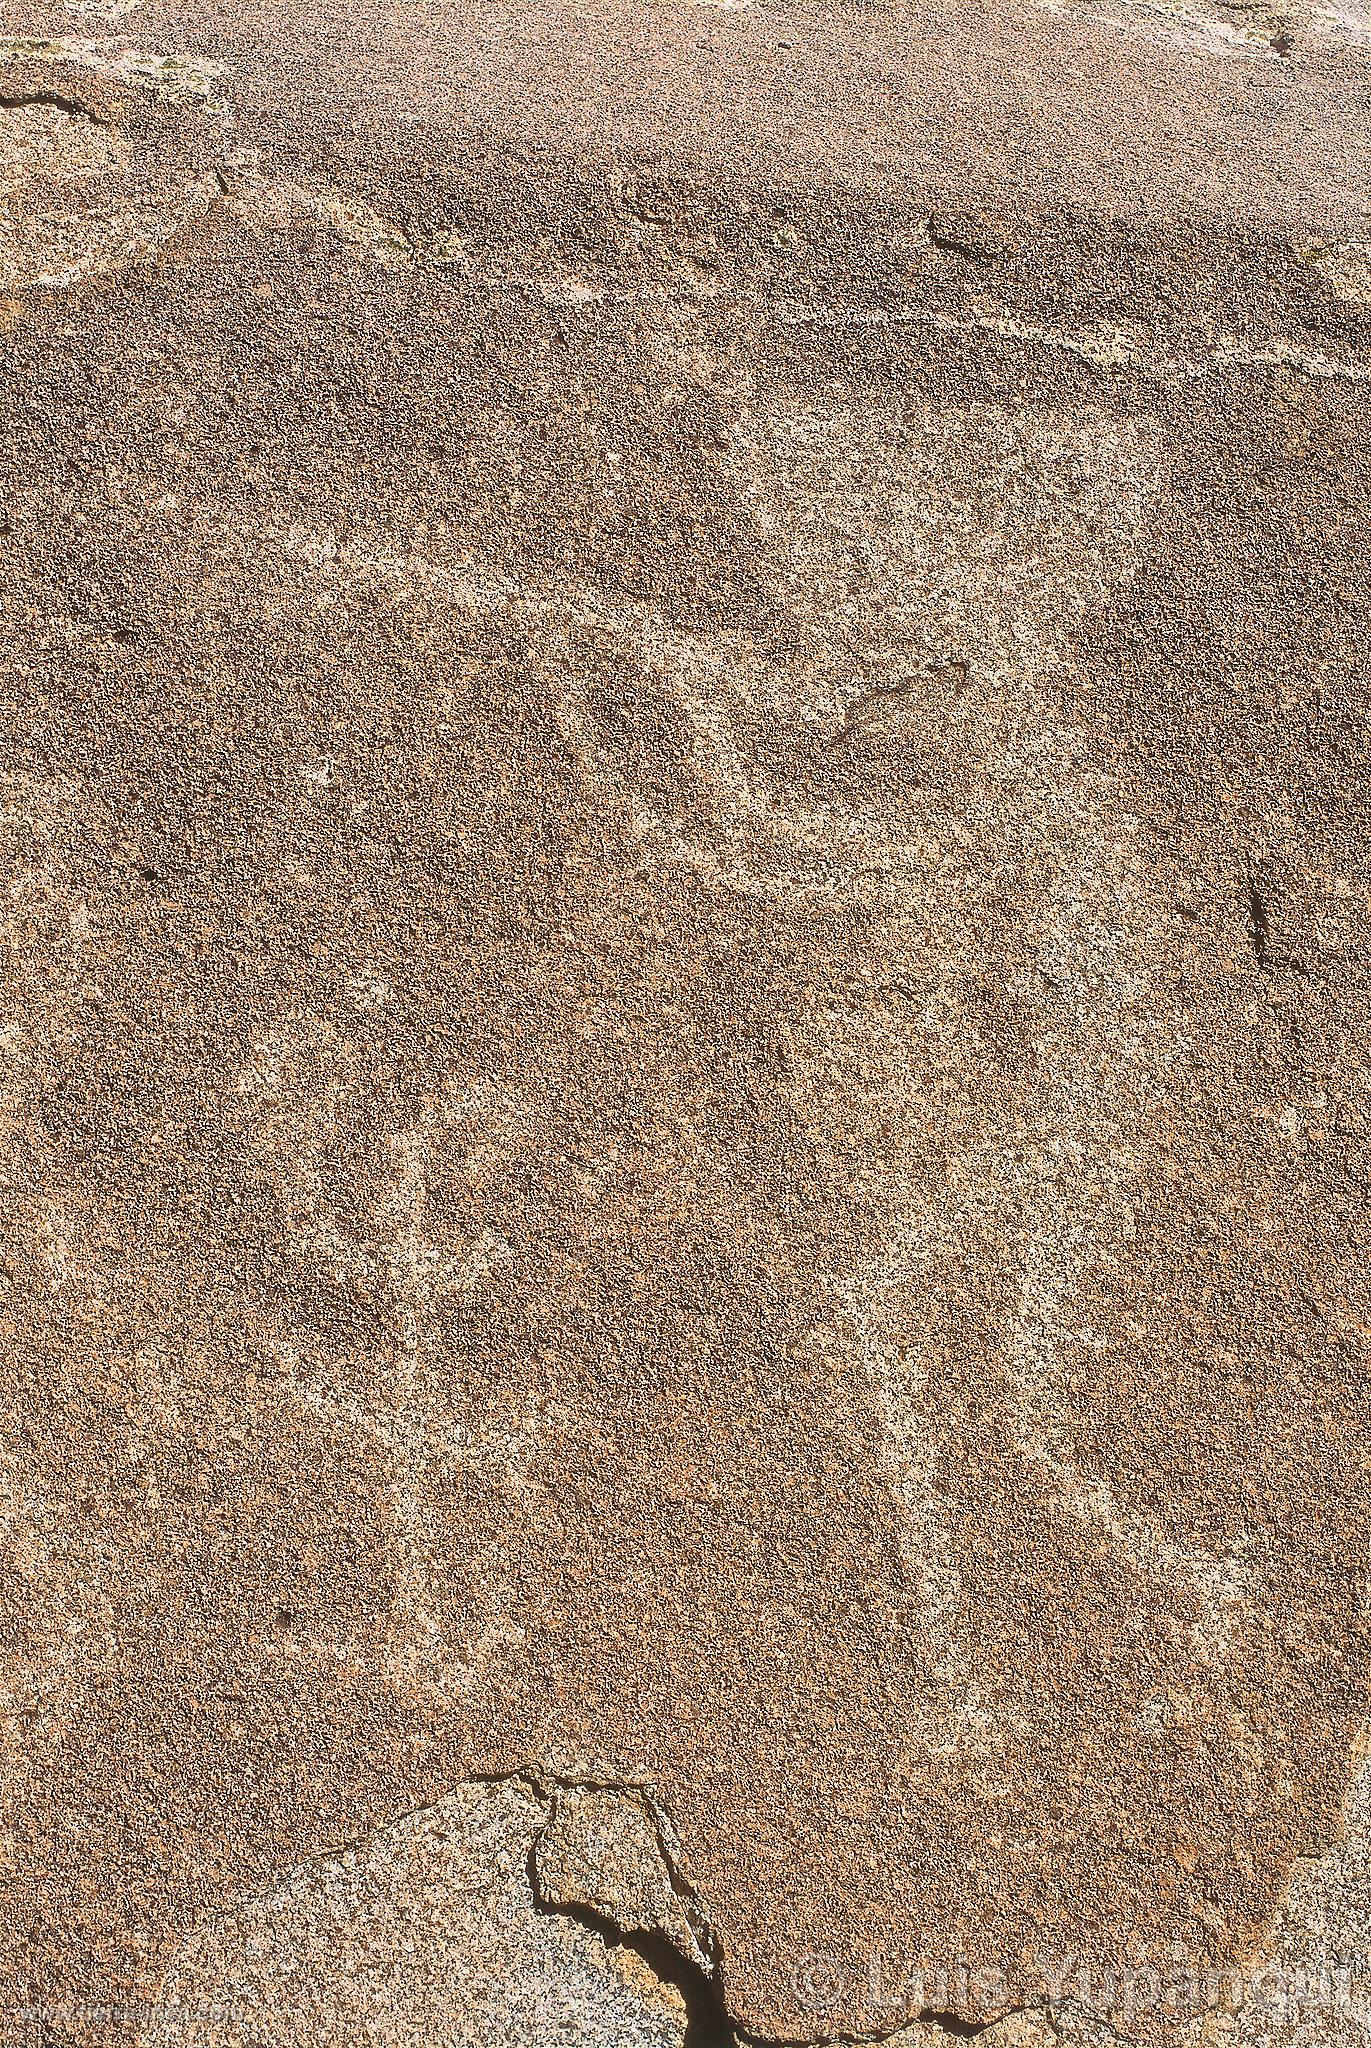 Petroglifos de Aajiri